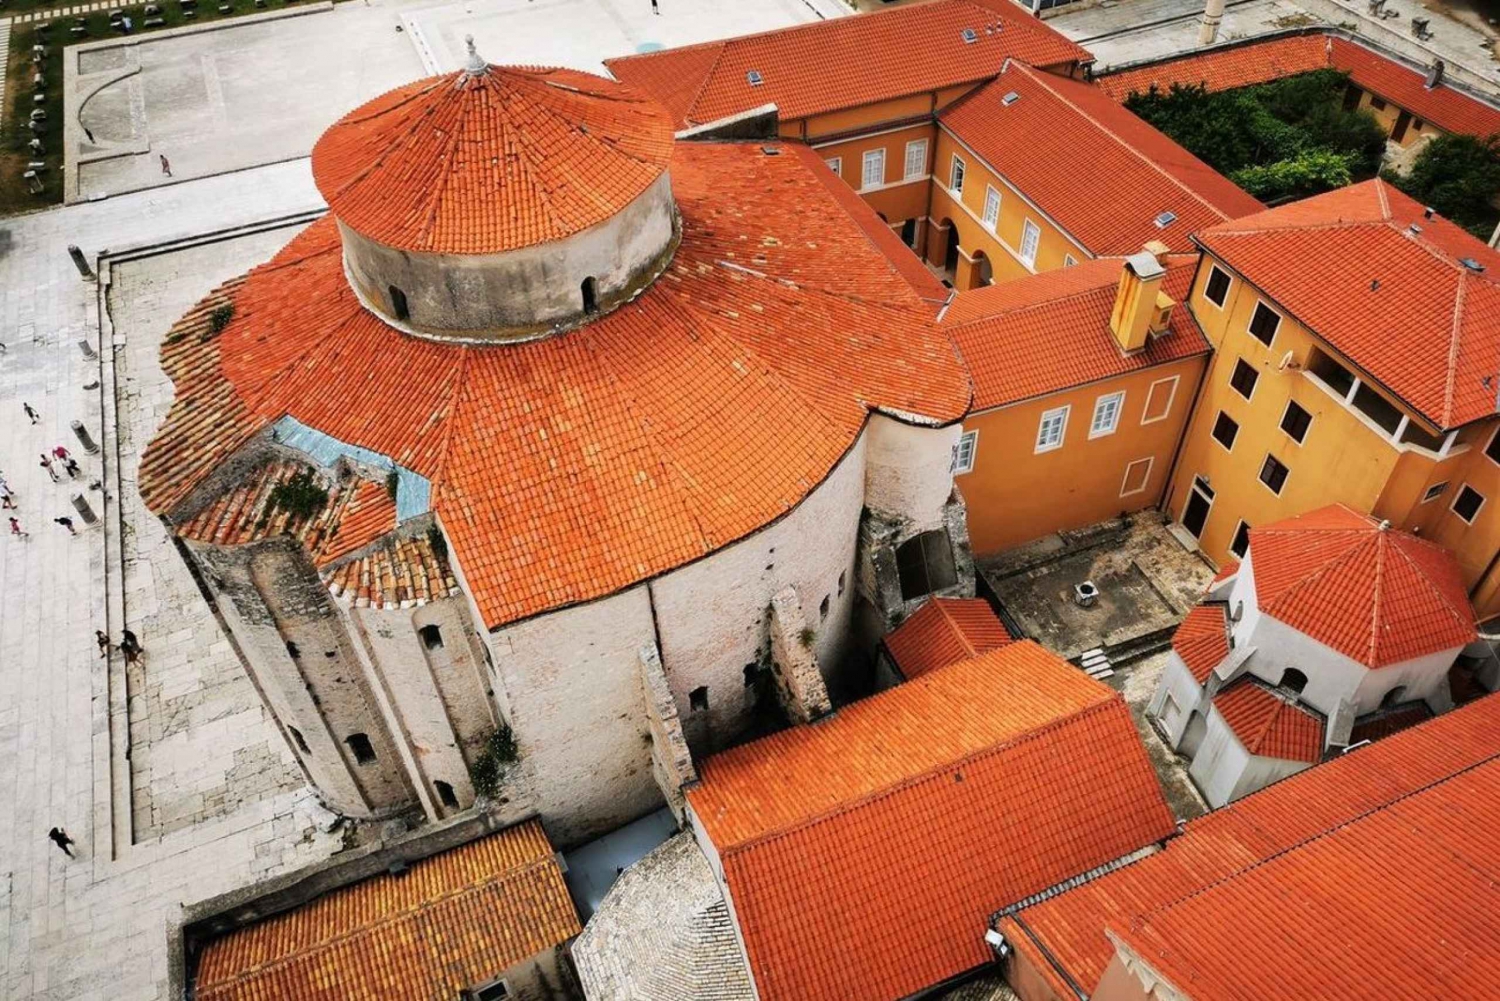 Zadar: Stadsrondleiding in het Pools